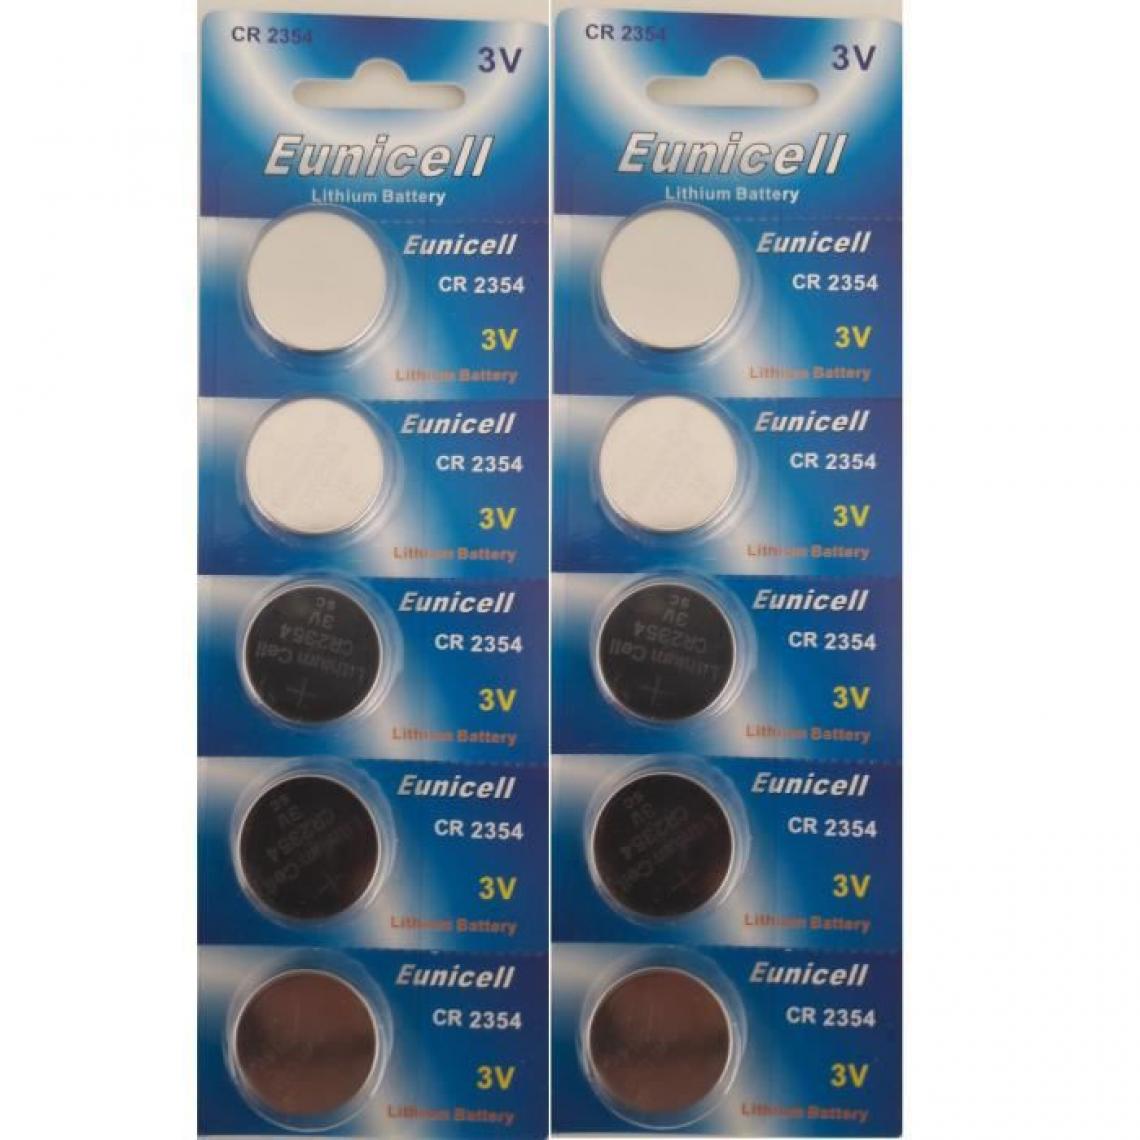 Eunicell - lot de 10 piles CR2354 sans rainure d'approfondissement 3 V Lithium Pile Bouton (2 blisters de 5 Piles) Eunicell - Piles standard